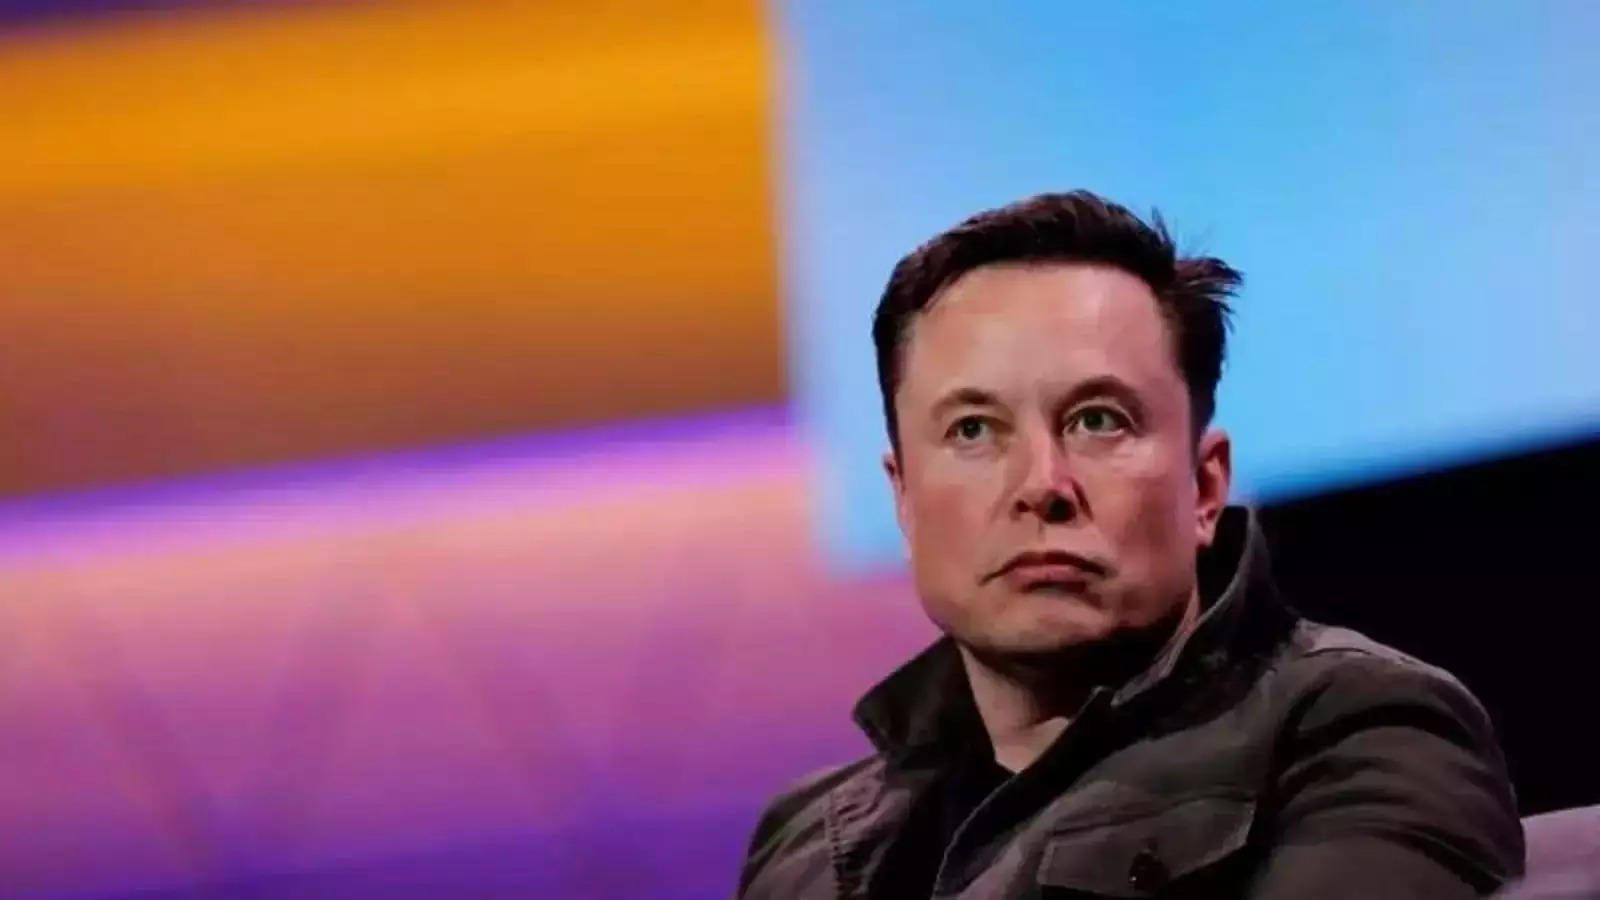 Elon Twitter owner Musk